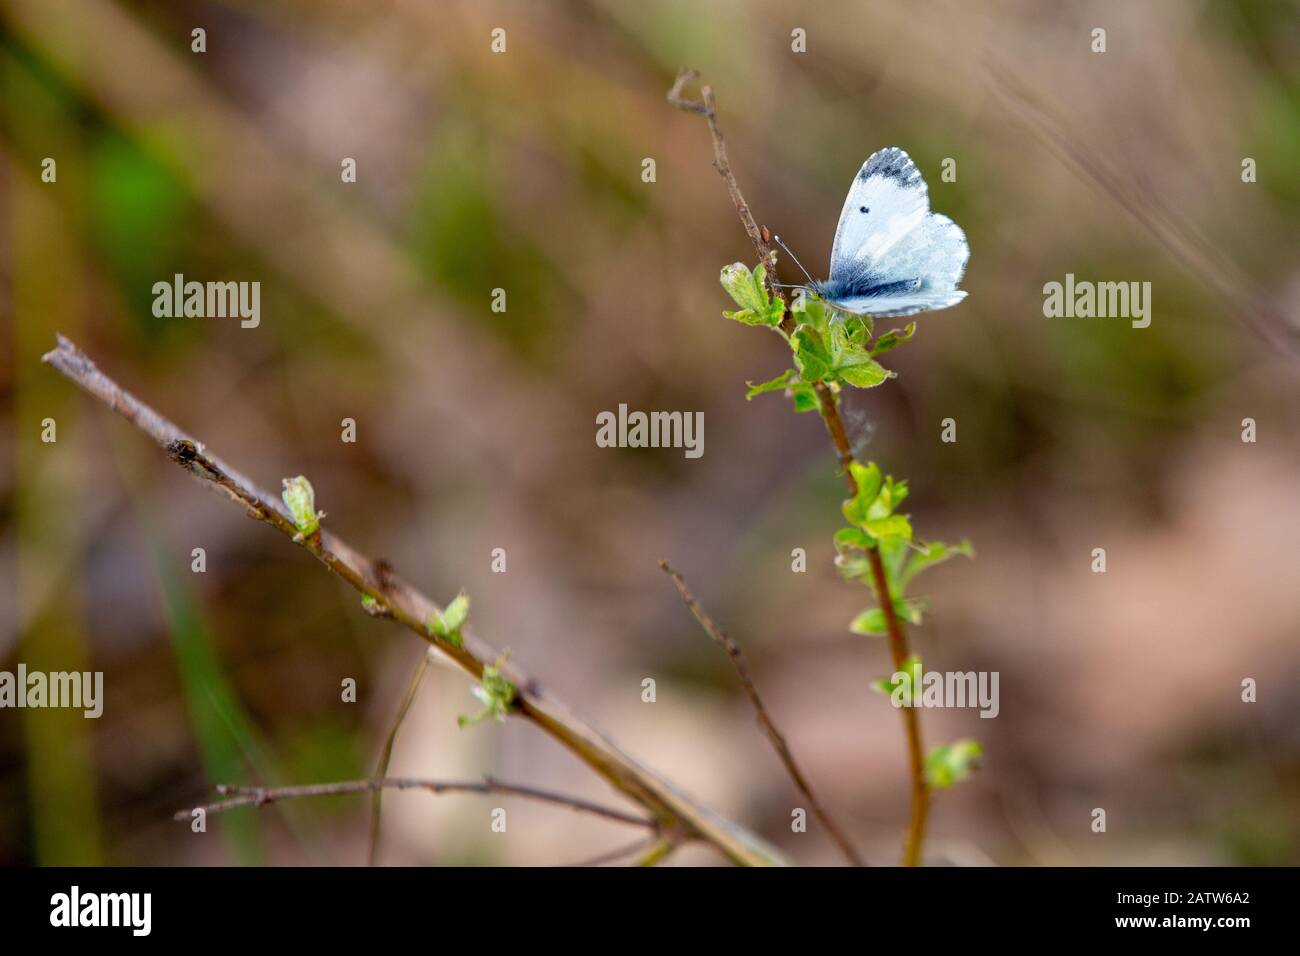 Au début du printemps, un papillon de chou se trouve sur une branche d'un buisson avec de jeunes feuilles vertes florissante. Bluer Banque D'Images